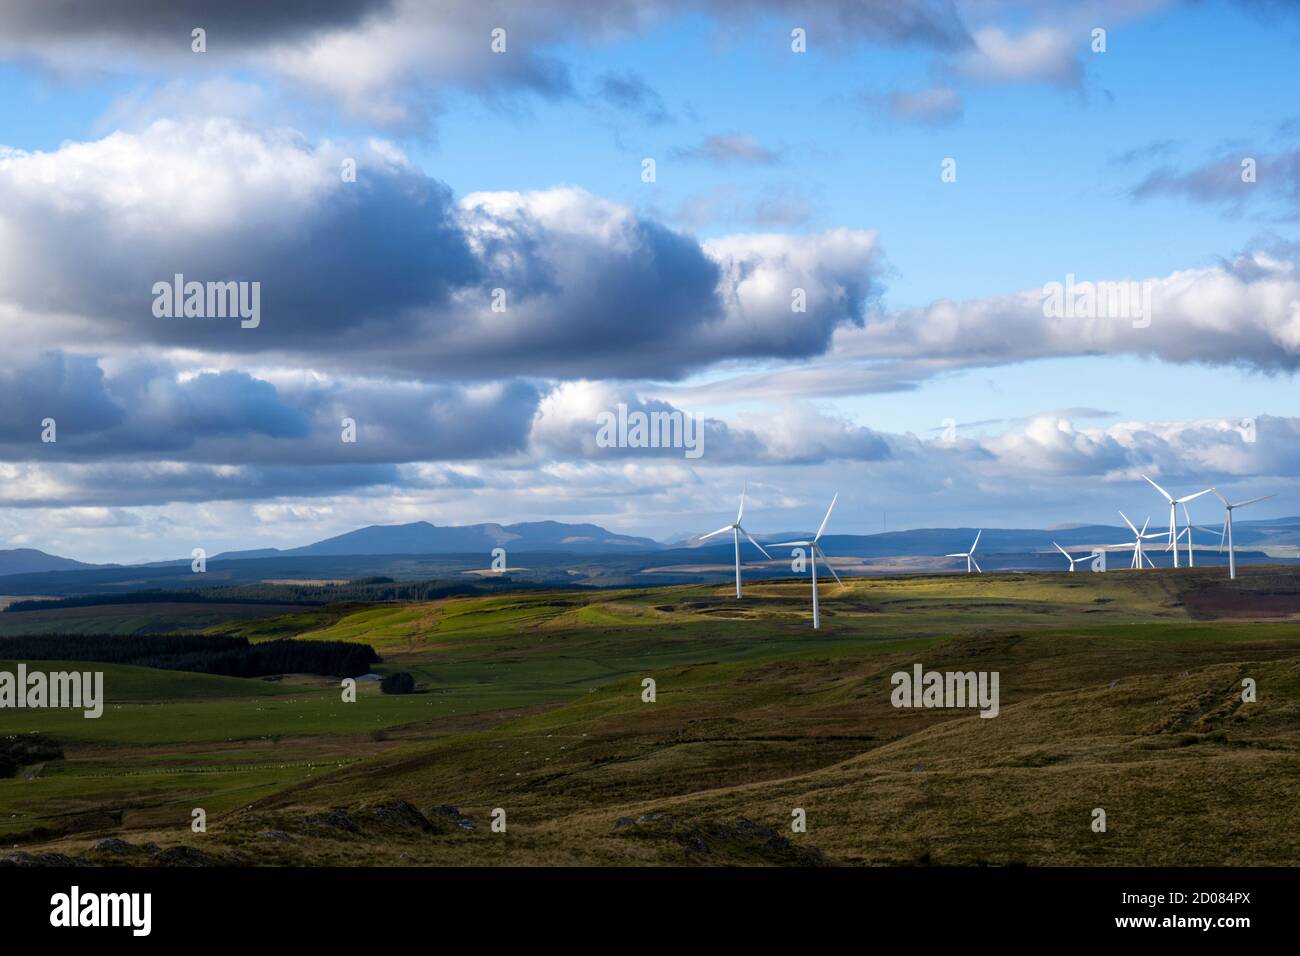 Vue depuis le sommet de la montagne près de Caersws of certaines éoliennes éclairées par la lumière du soleil dans le distance Banque D'Images